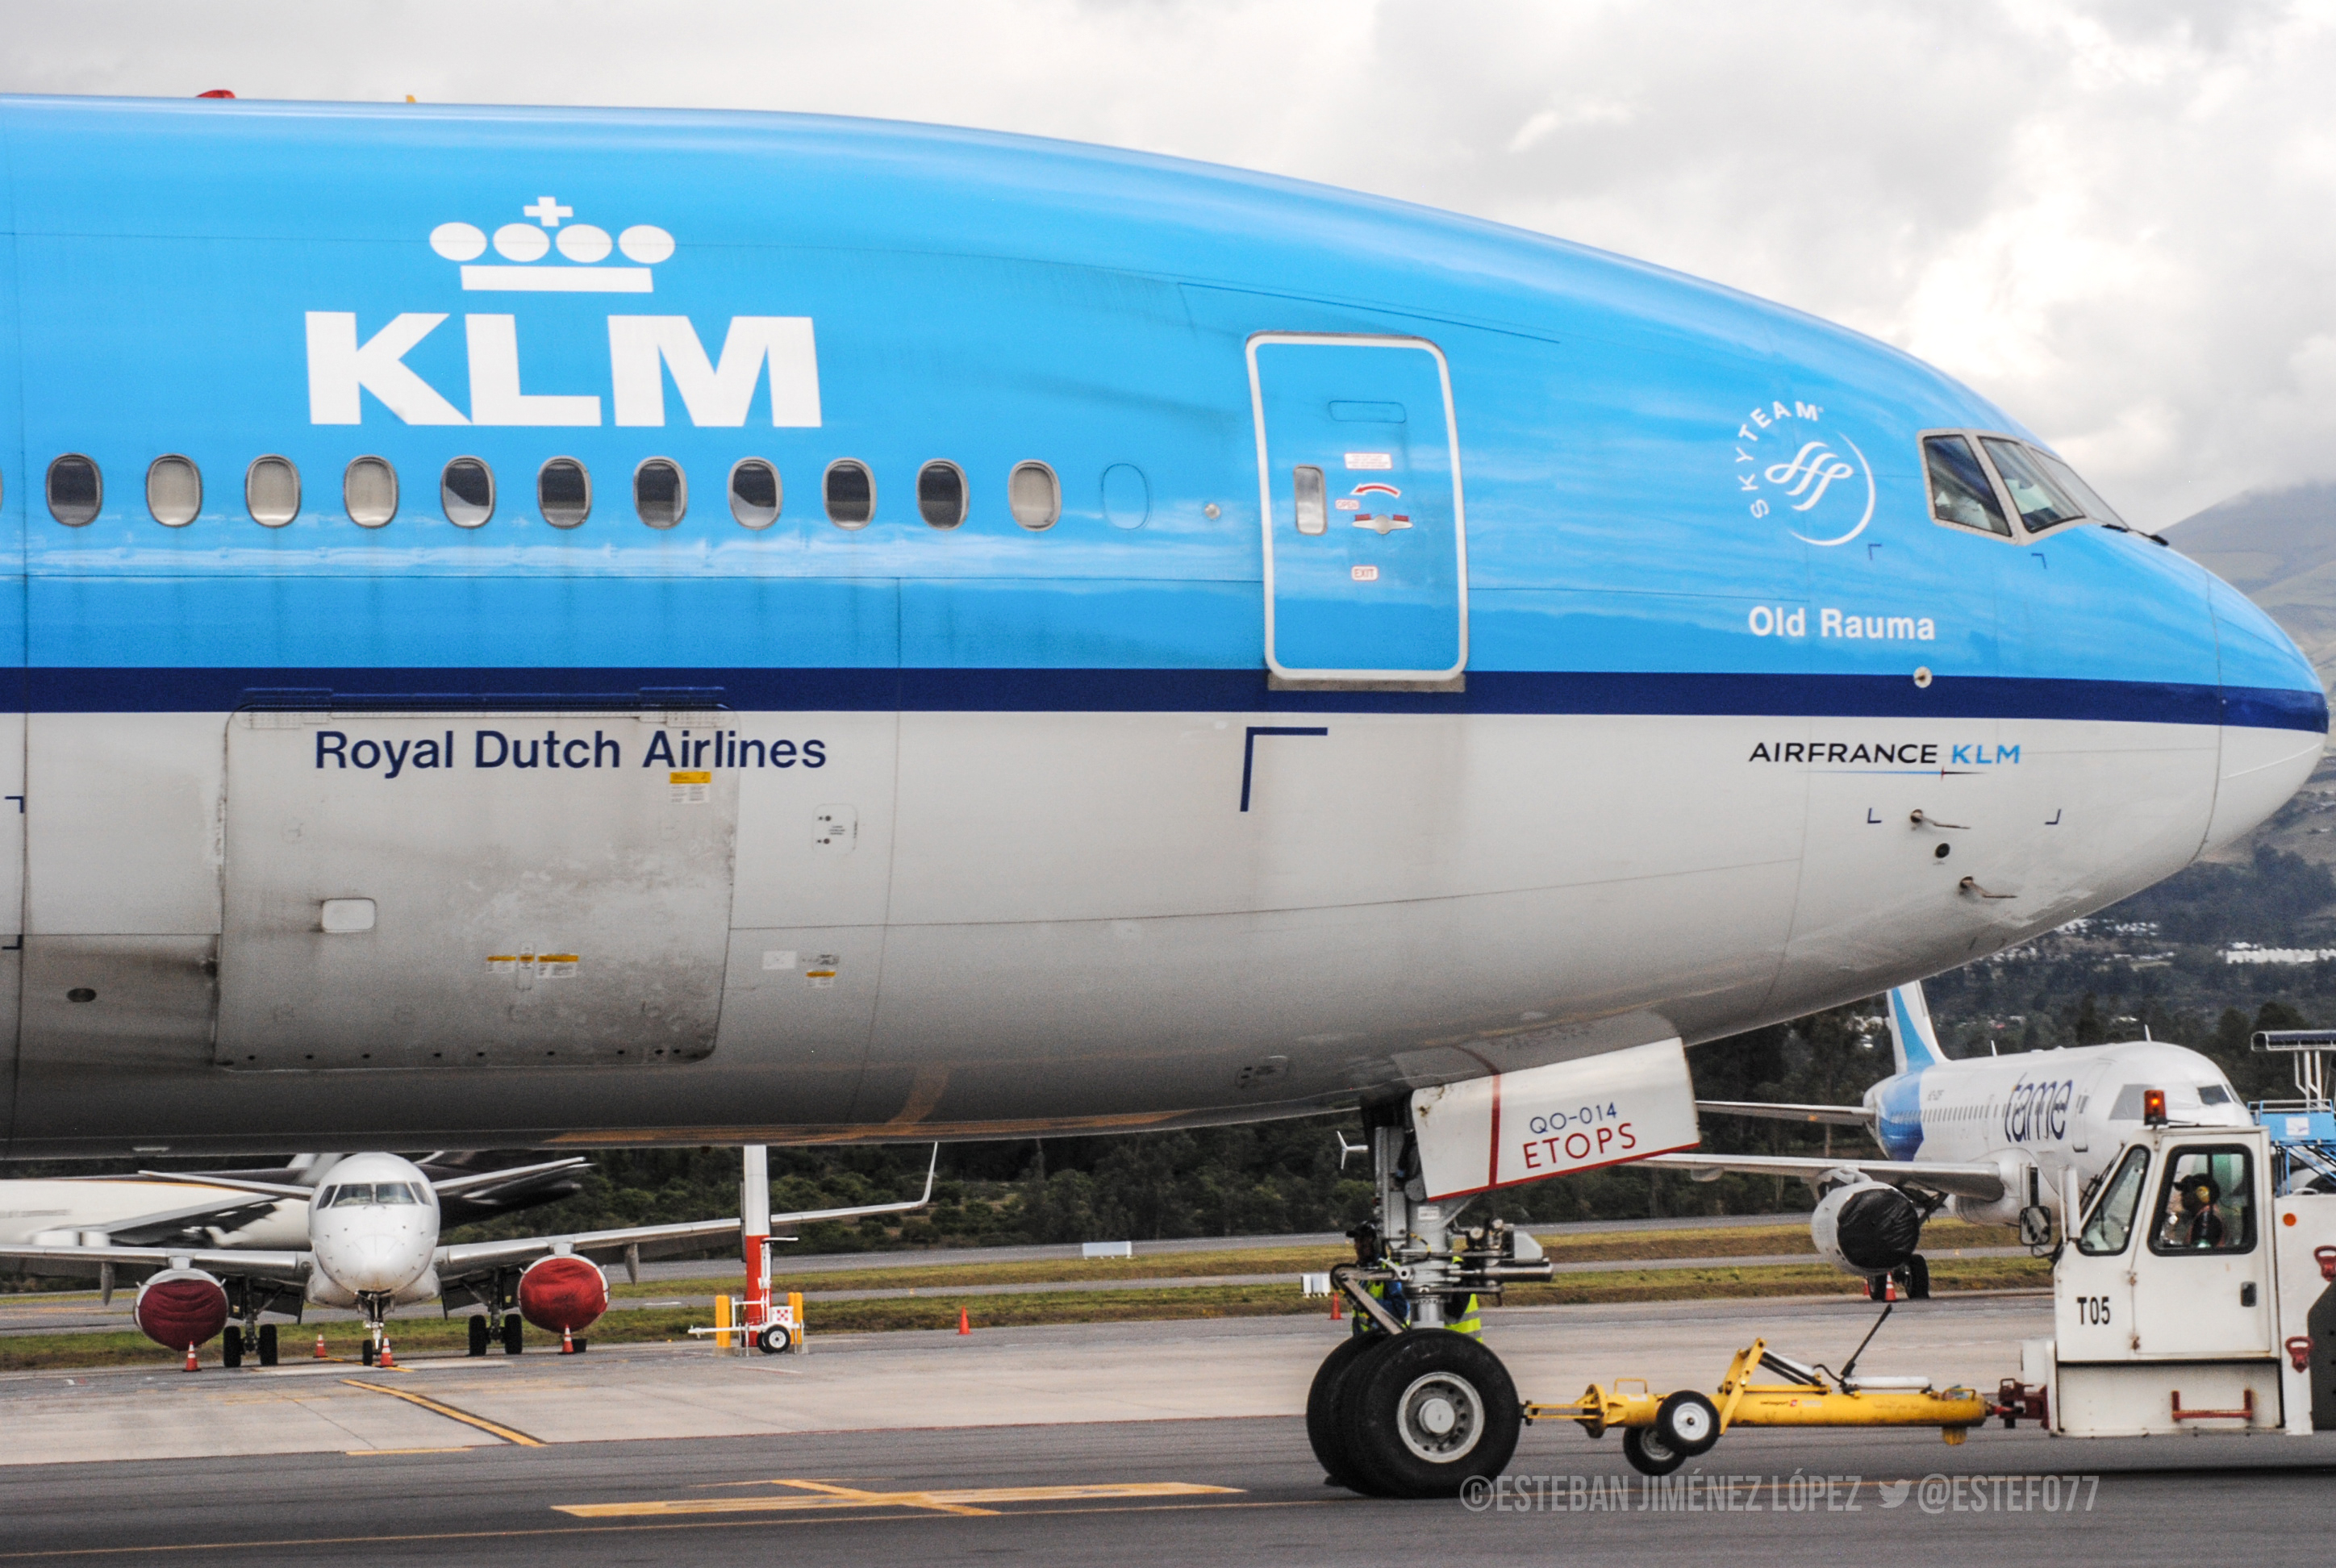 KLM une Amsterdam con Cancún